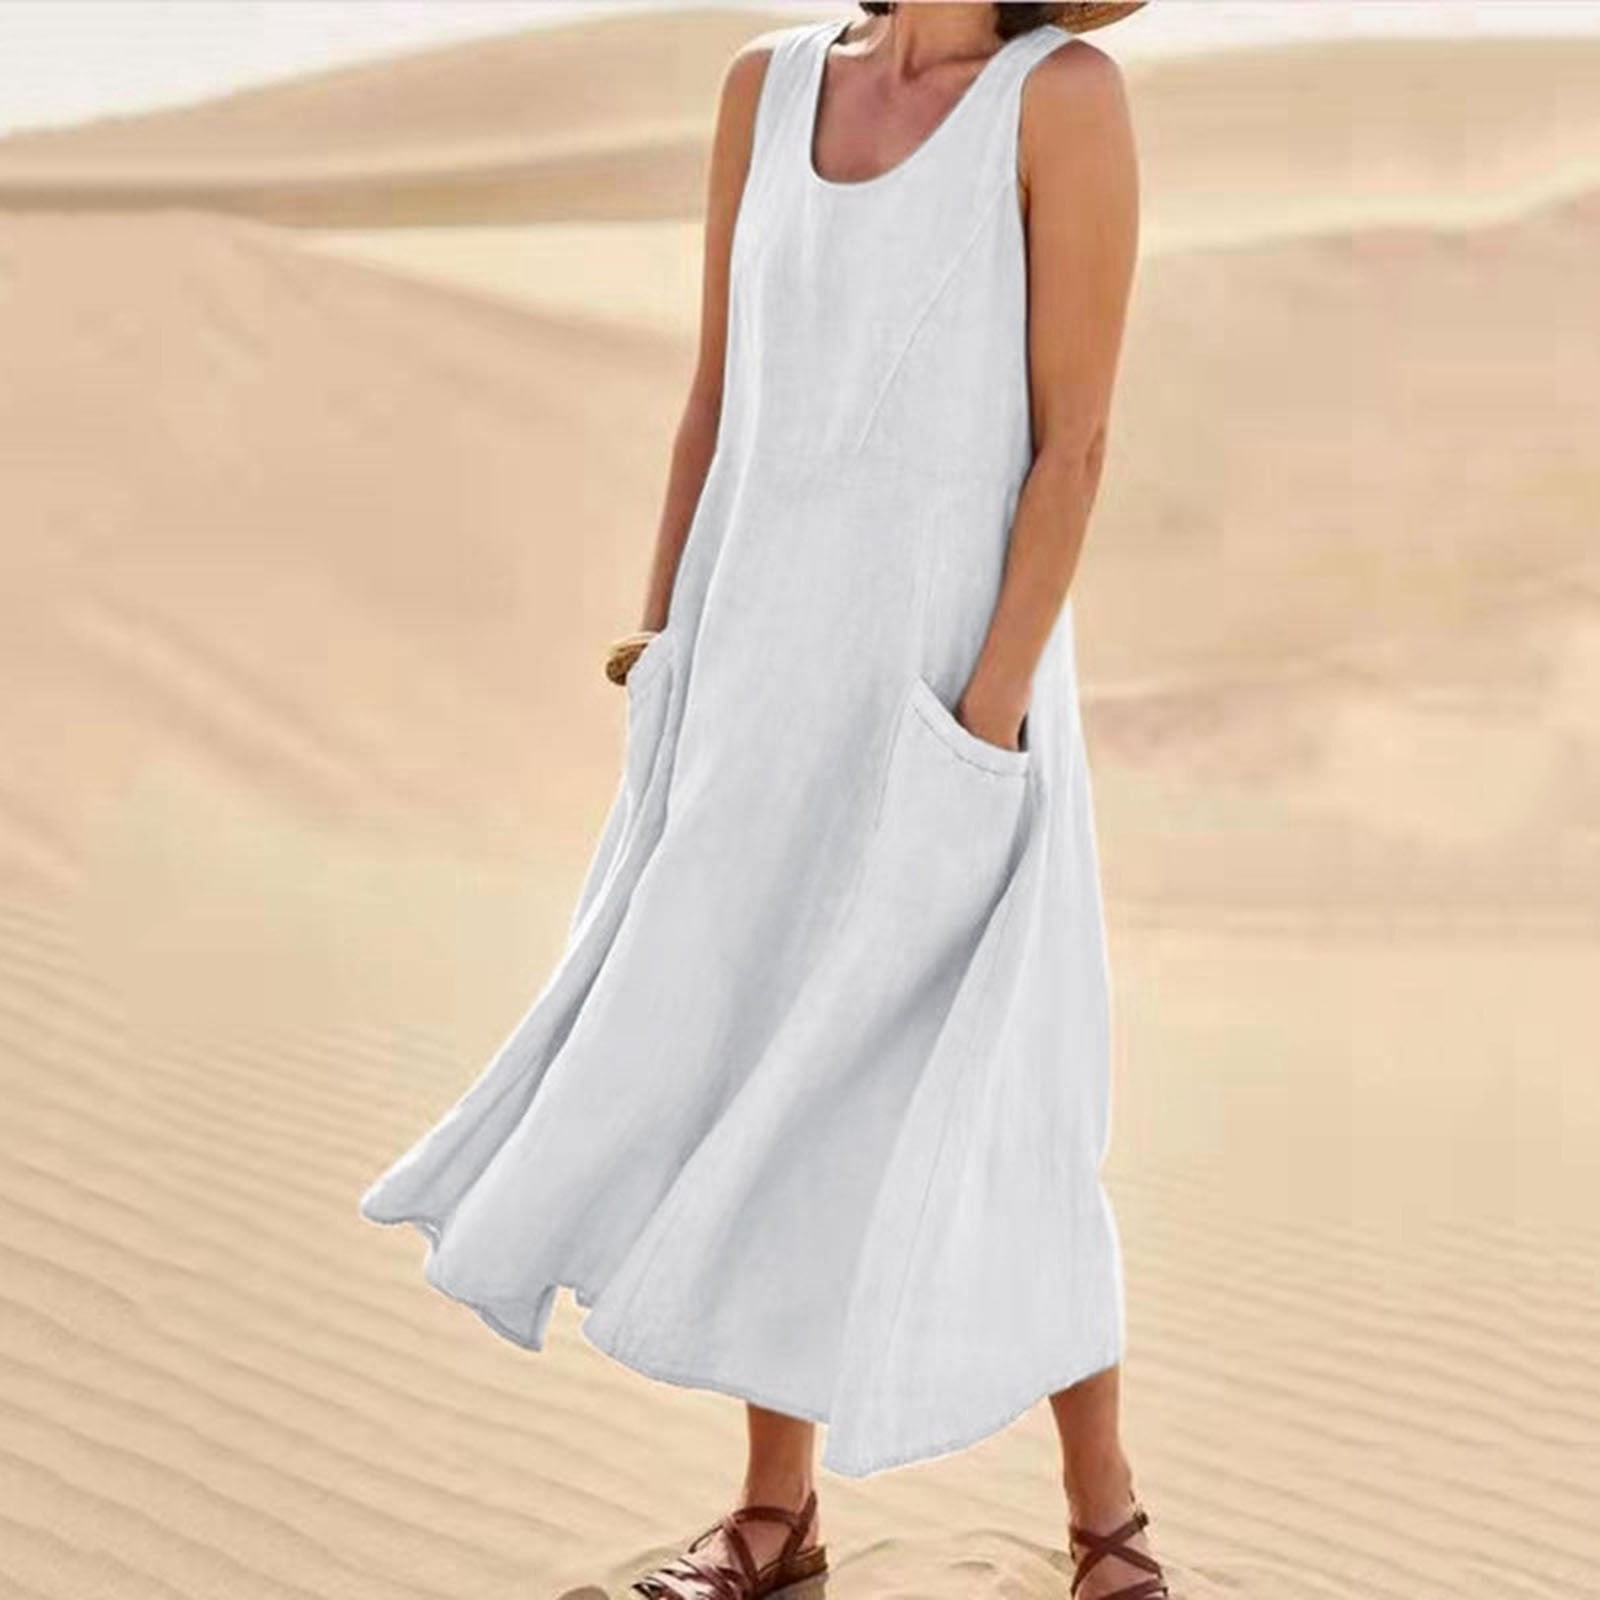 Women's Sleeveless Cotton Linen Loose Long Dress Summer Casual Solid ...